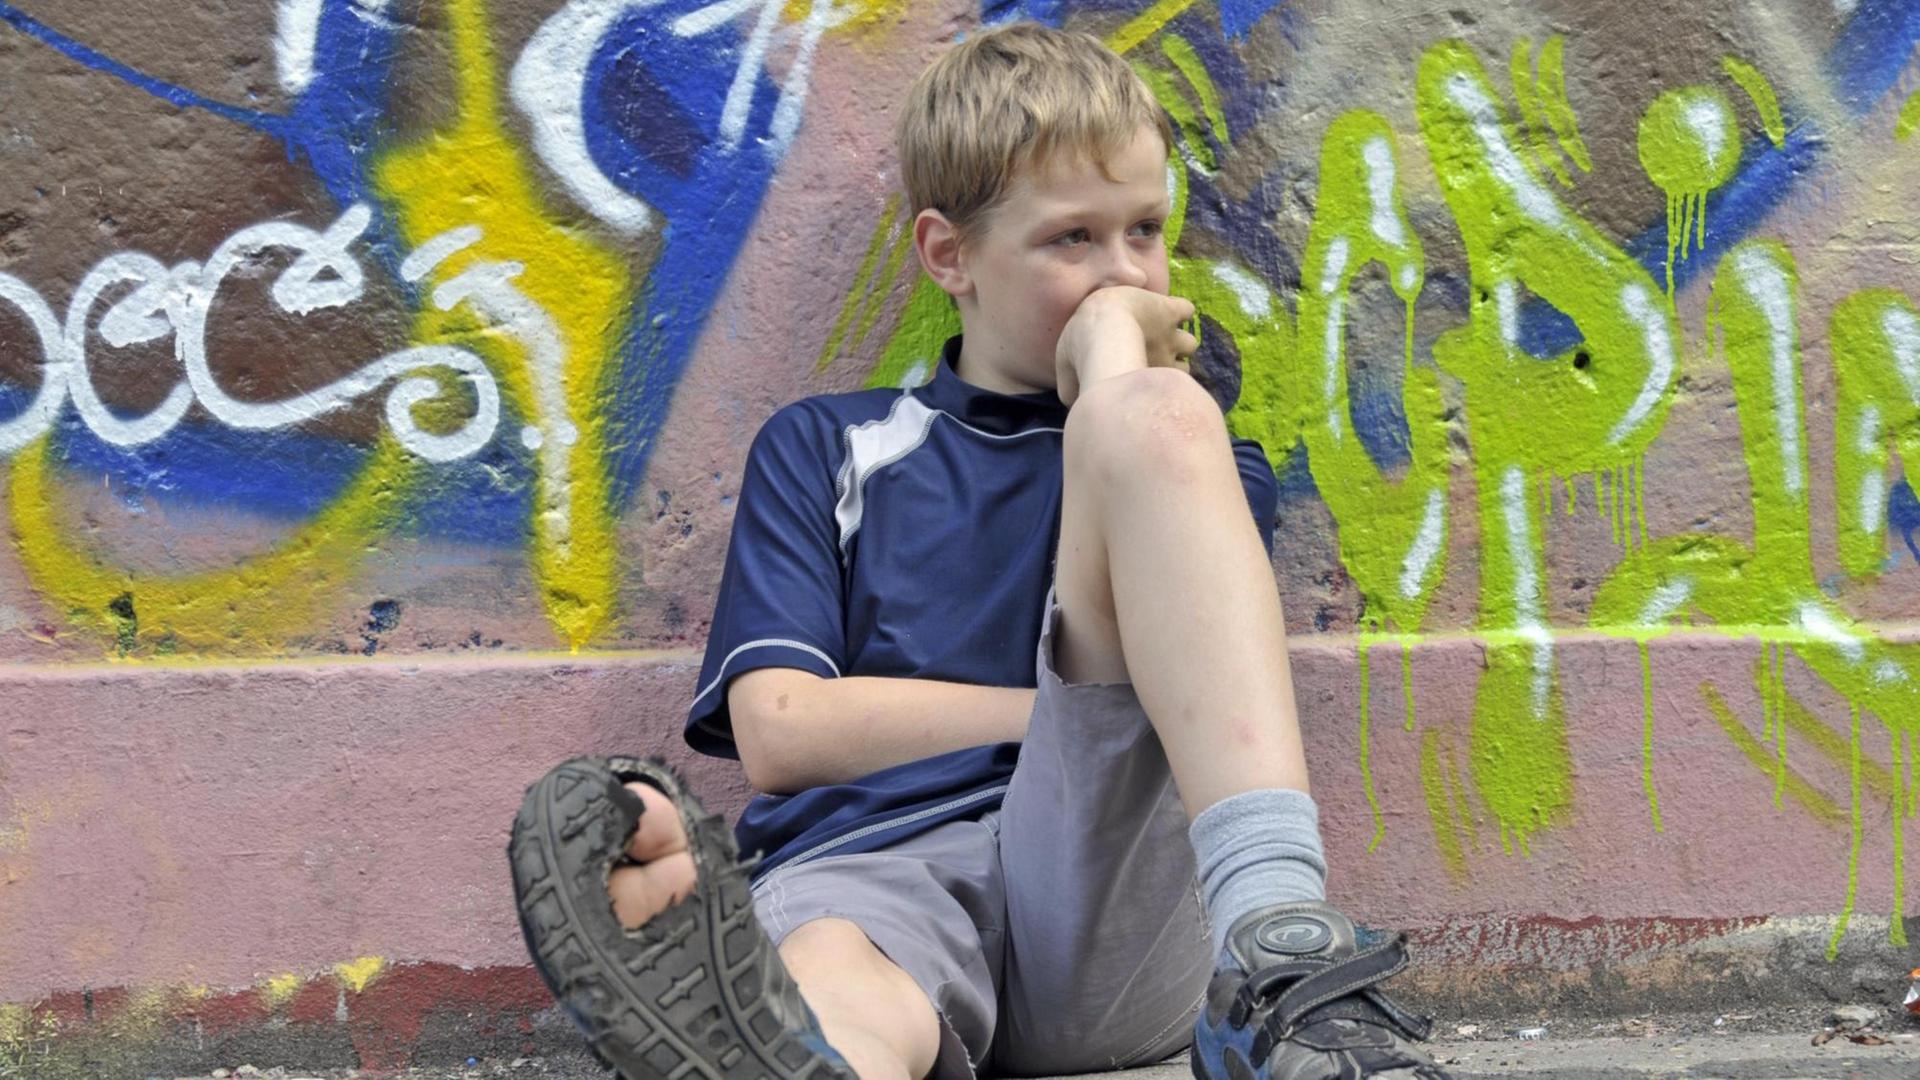 Lustloser neunjähriger Junge sitzt vor einer Graffiti-Wand, einen Fuß von sich gestreckt, sodass die kaputte Sohle des Schuhs sichtbar wird. (Symbolbild)